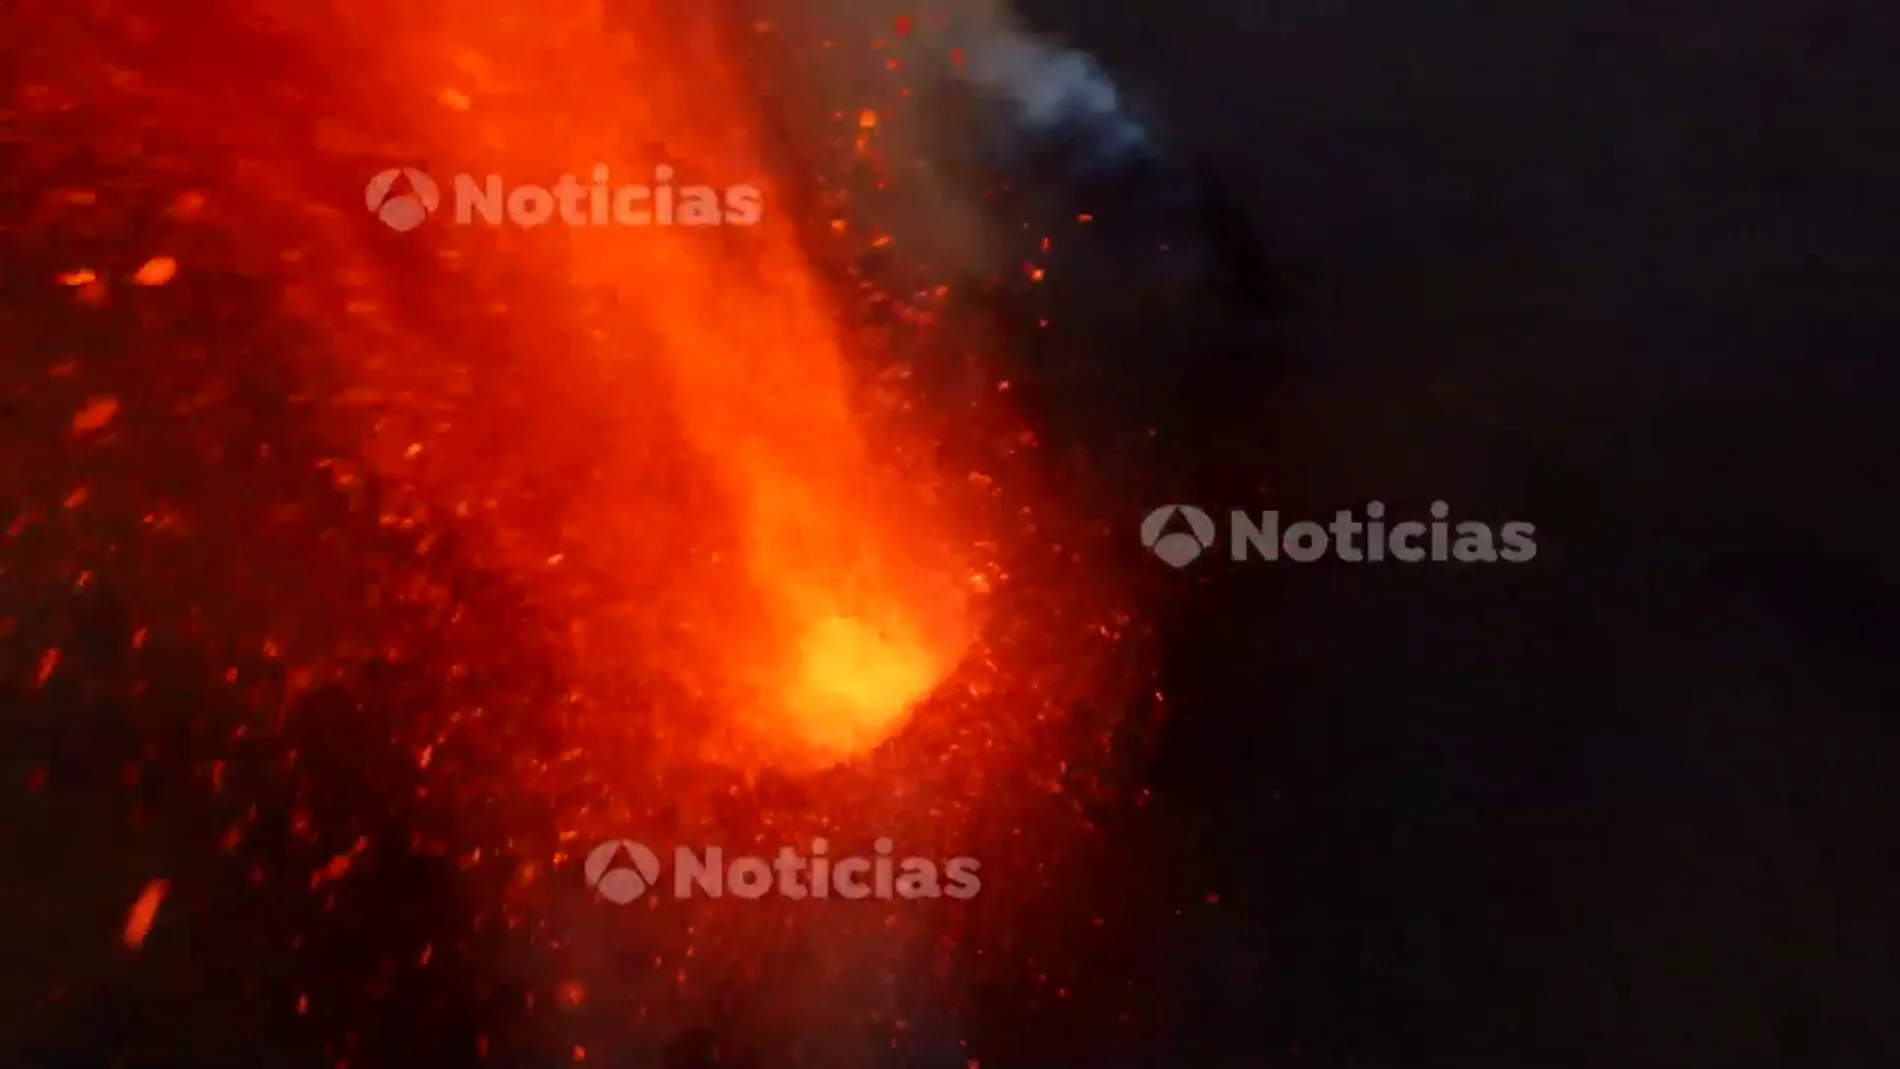 Imágenes en exclusiva de Antena 3 Noticias de la erupción desde la chimenea del volcán de La Palma a vista de dron